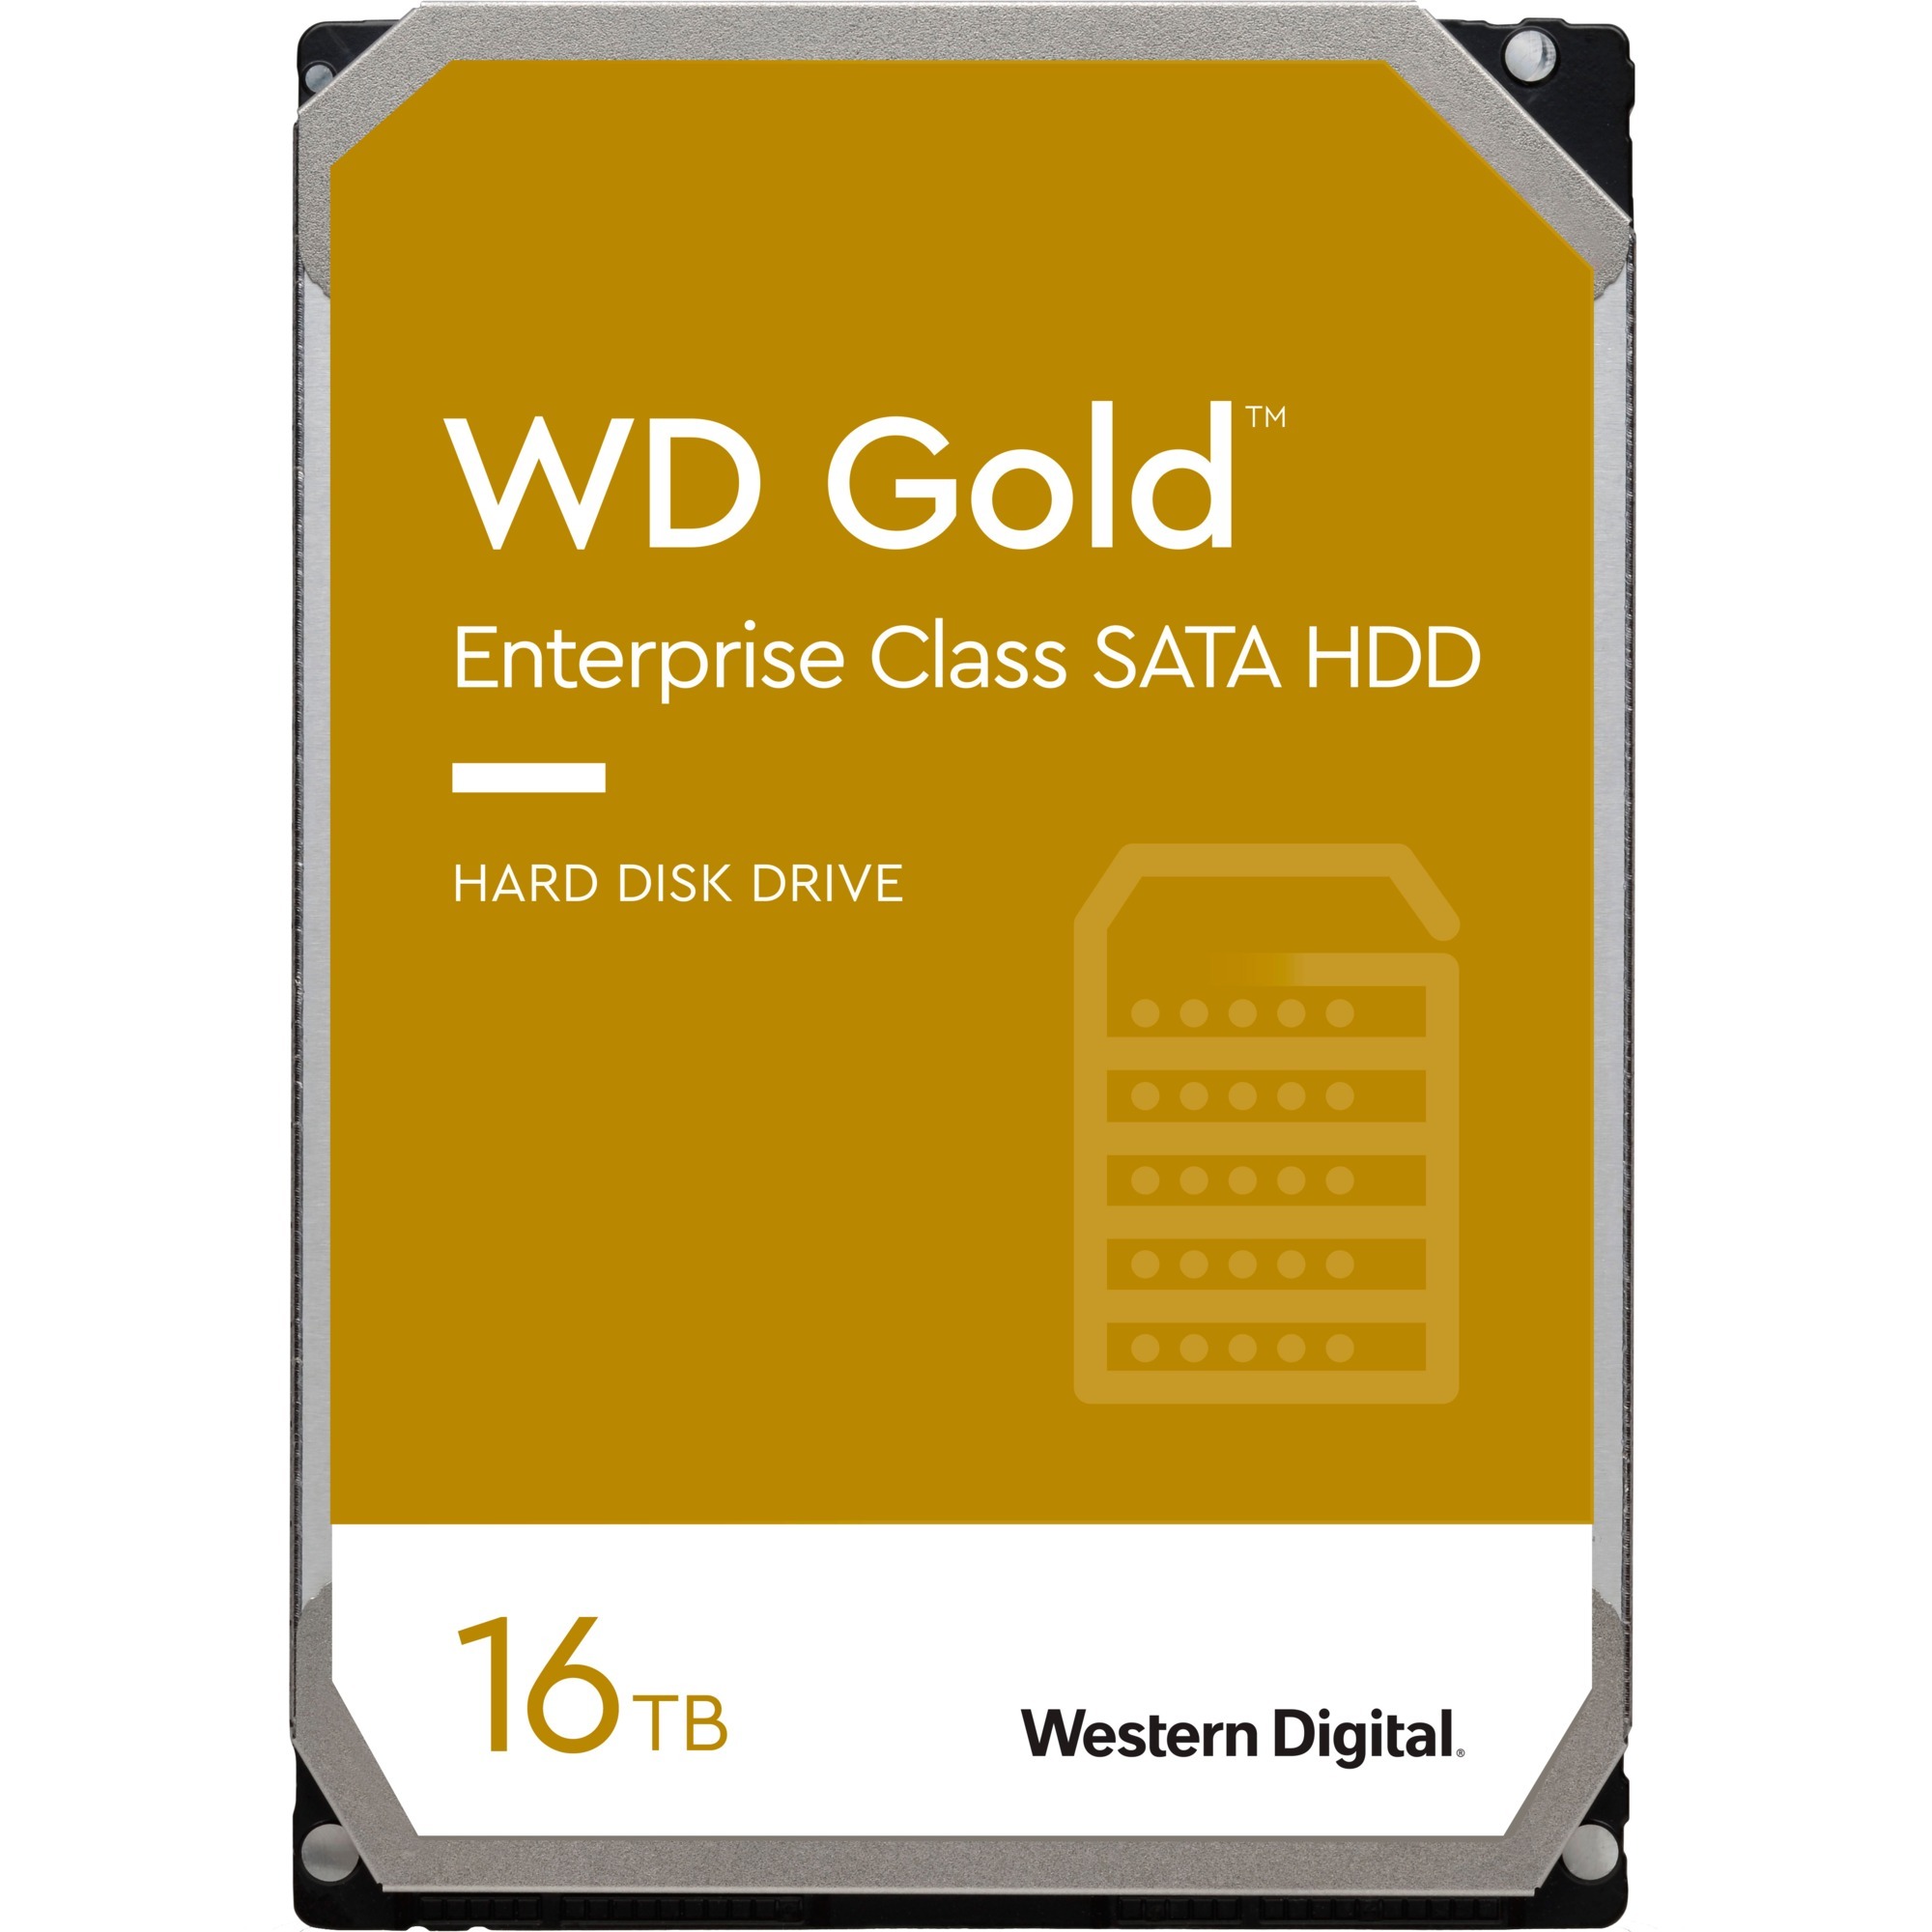 Image of Alternate - Gold Enterprise Class 16 TB, Festplatte online einkaufen bei Alternate